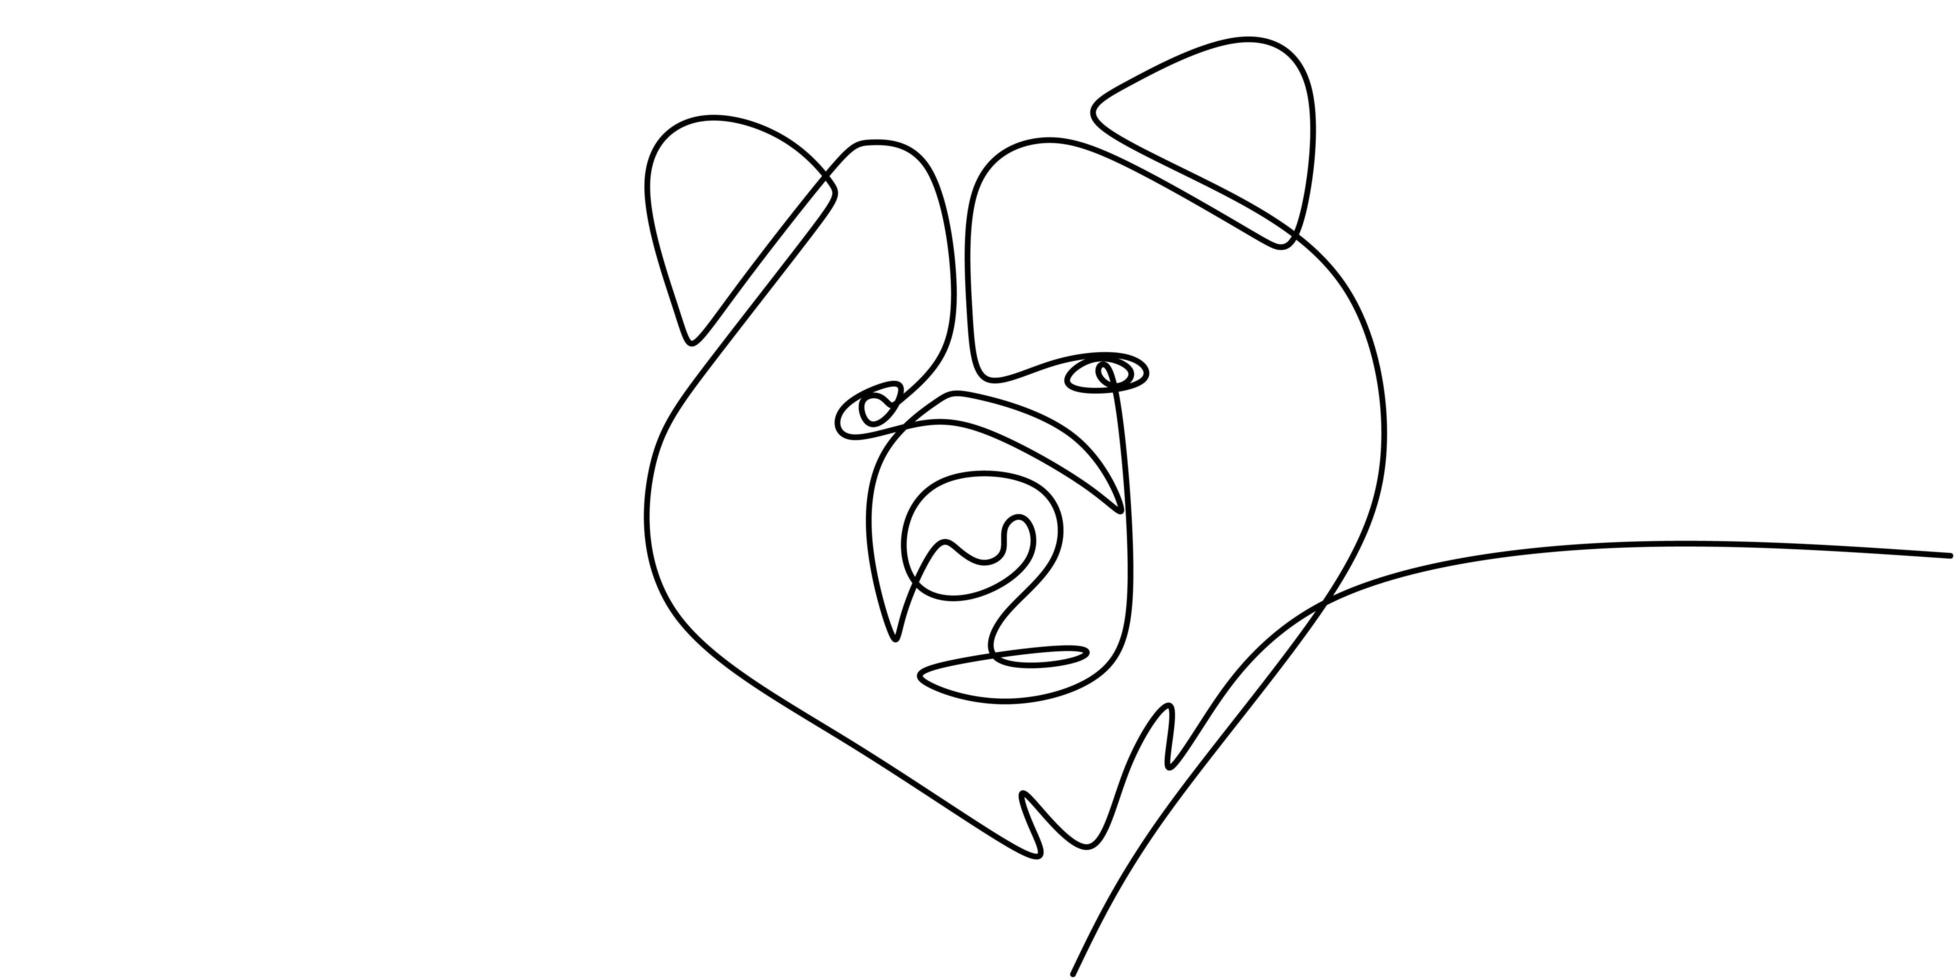 continue lijntekening van beer wilde dieren vectorillustratie. vector